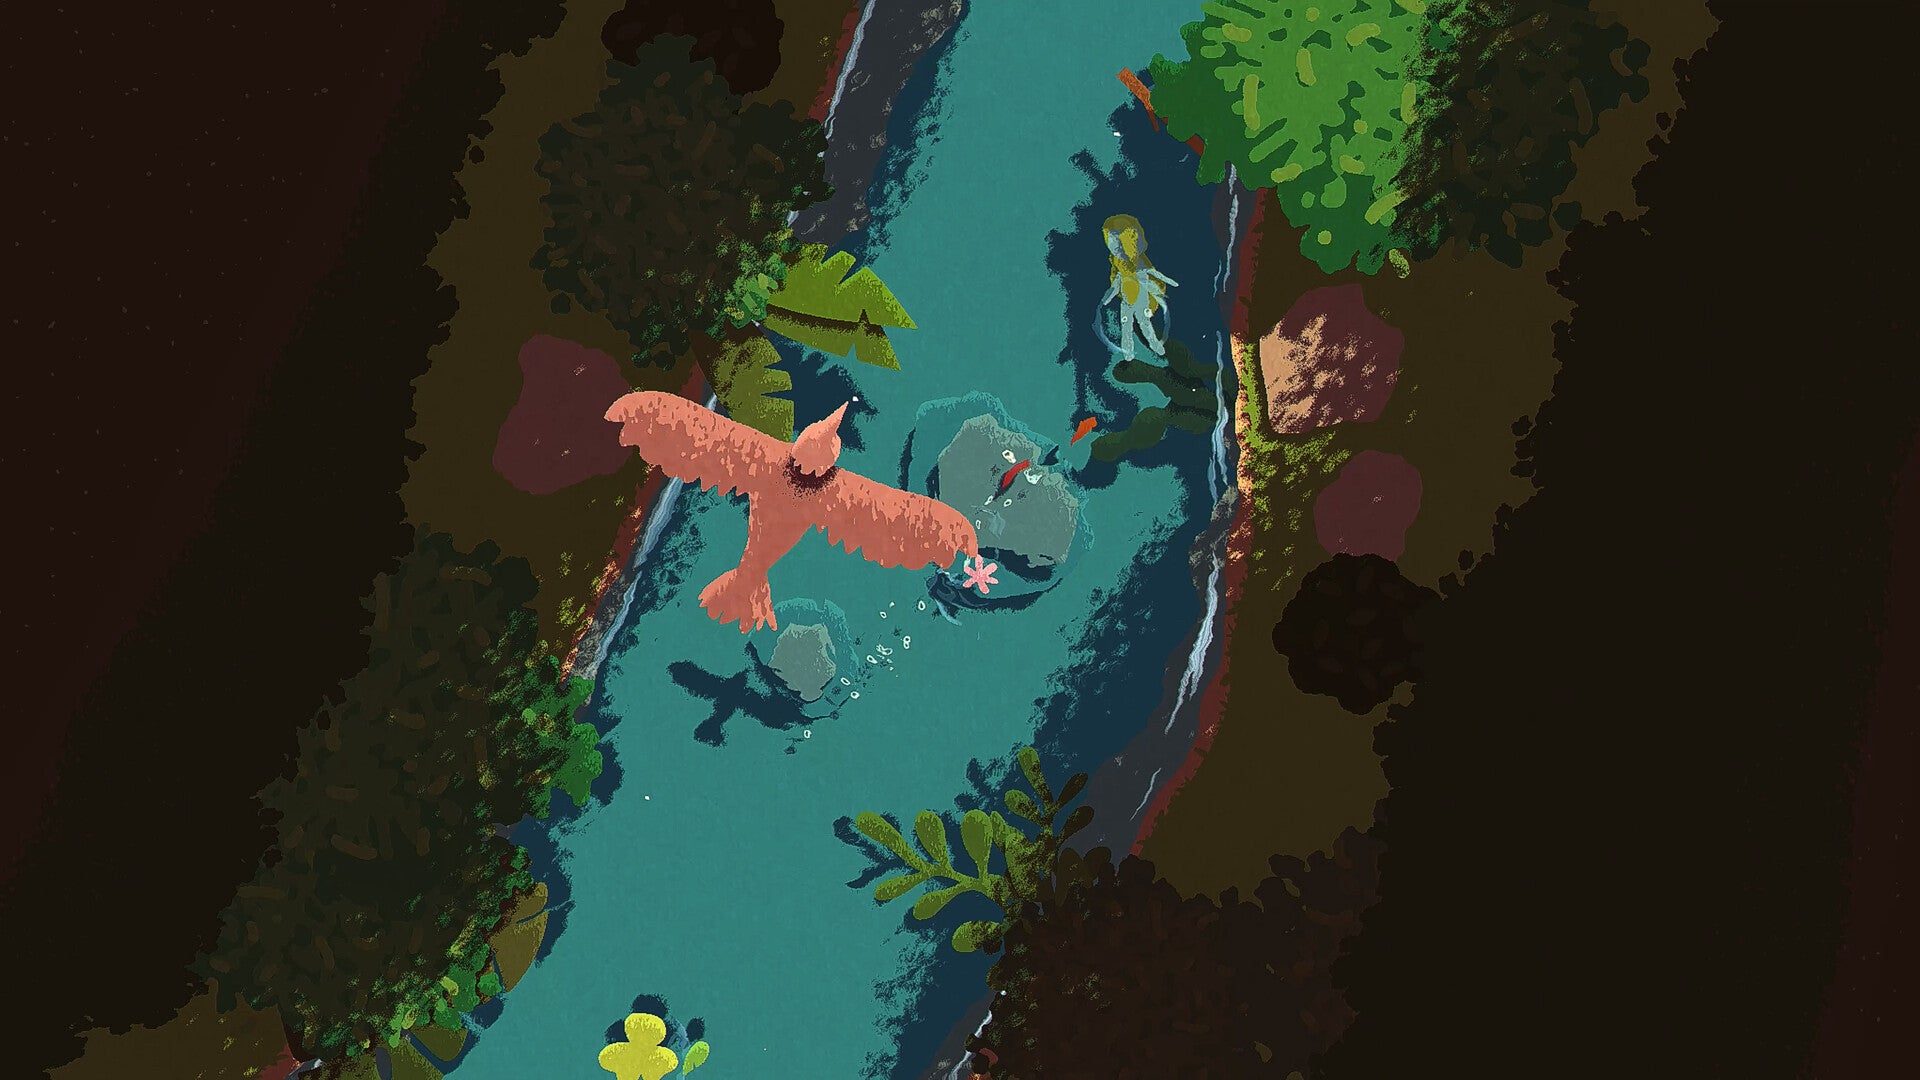 L'impressionniste Naiad. Une vue de dessus d'un personnage semblable à une sirène nageant sur le dos dans un cours d'eau, avec des arbres et des arbustes de chaque côté, et un oiseau qui interfère dans notre vue d'en haut. Les couleurs chaudes et pastel rendent l'image très agréable.